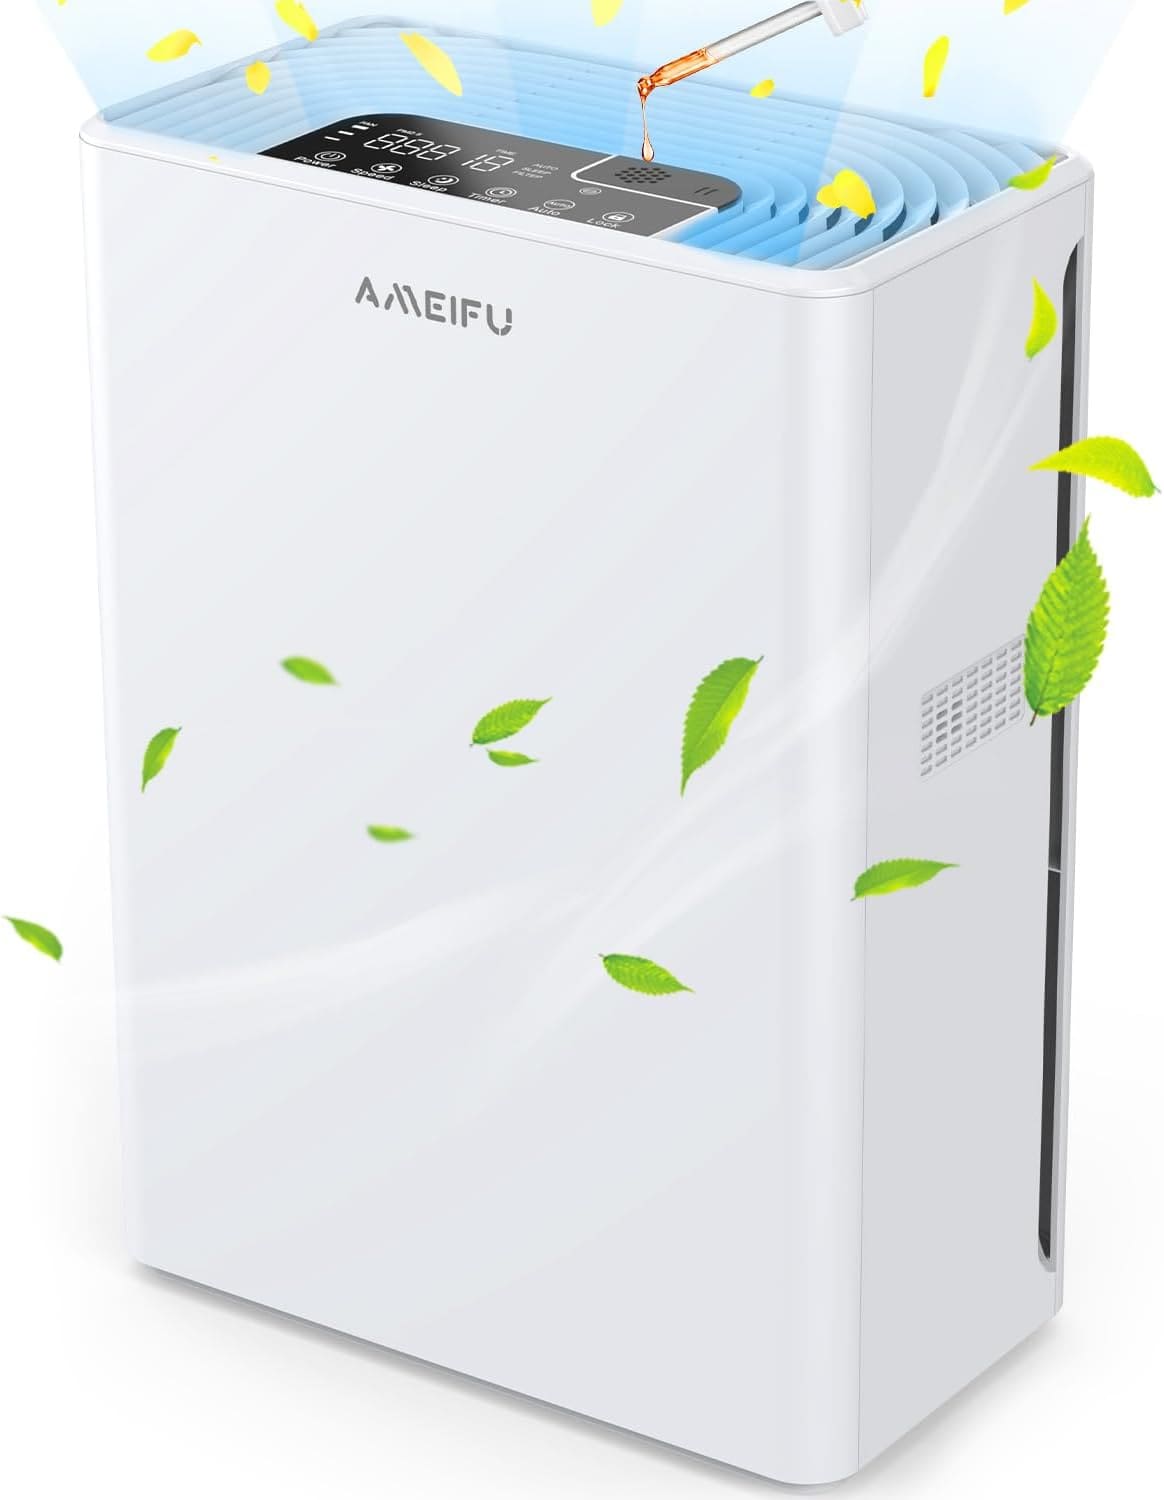 AMEIFU Air Purifier Review